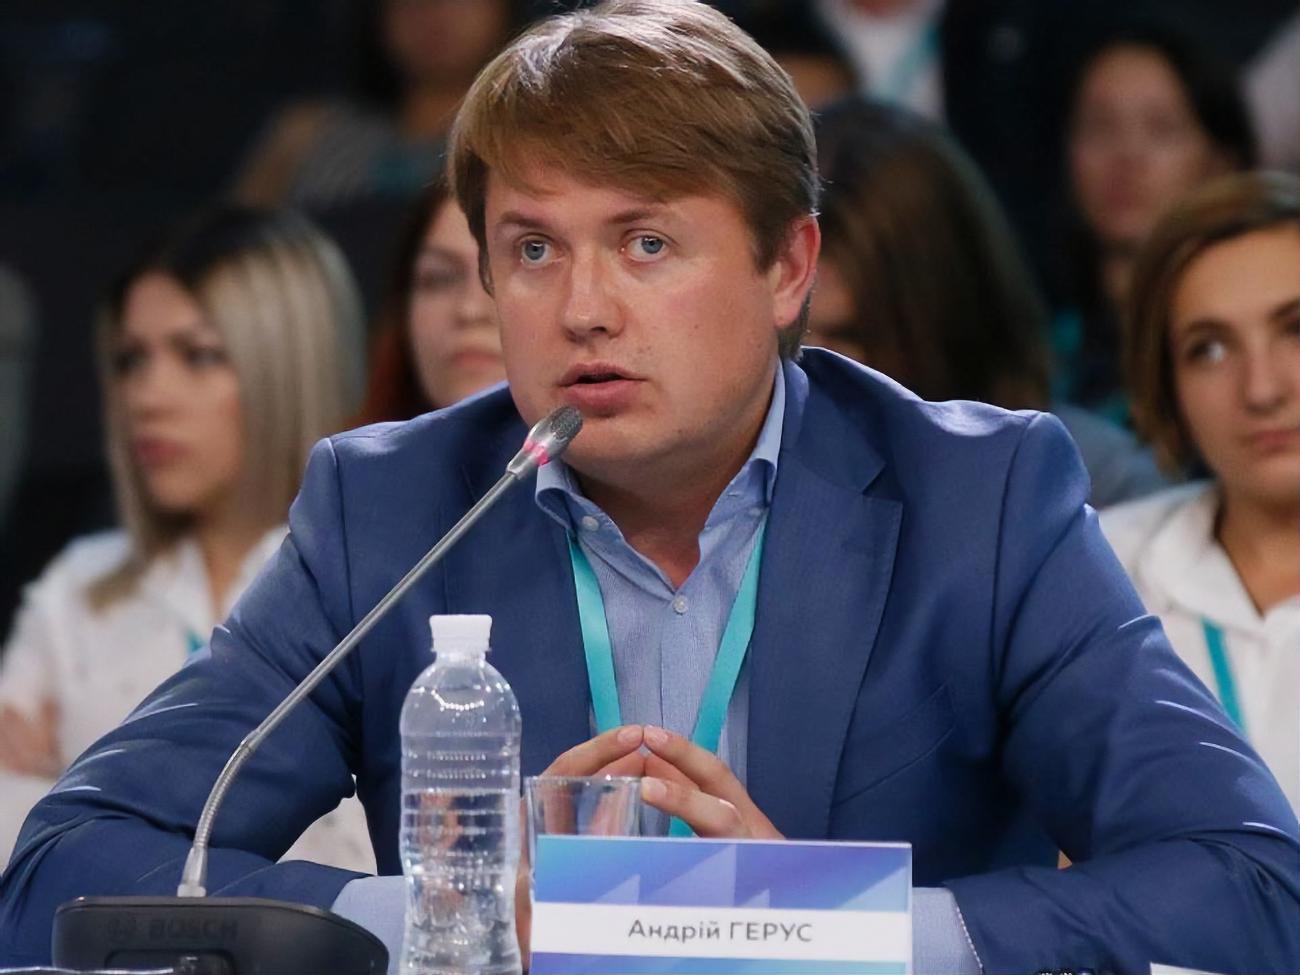 Голова комітету з питань енергетики Андрій Герус захворів Covid-19